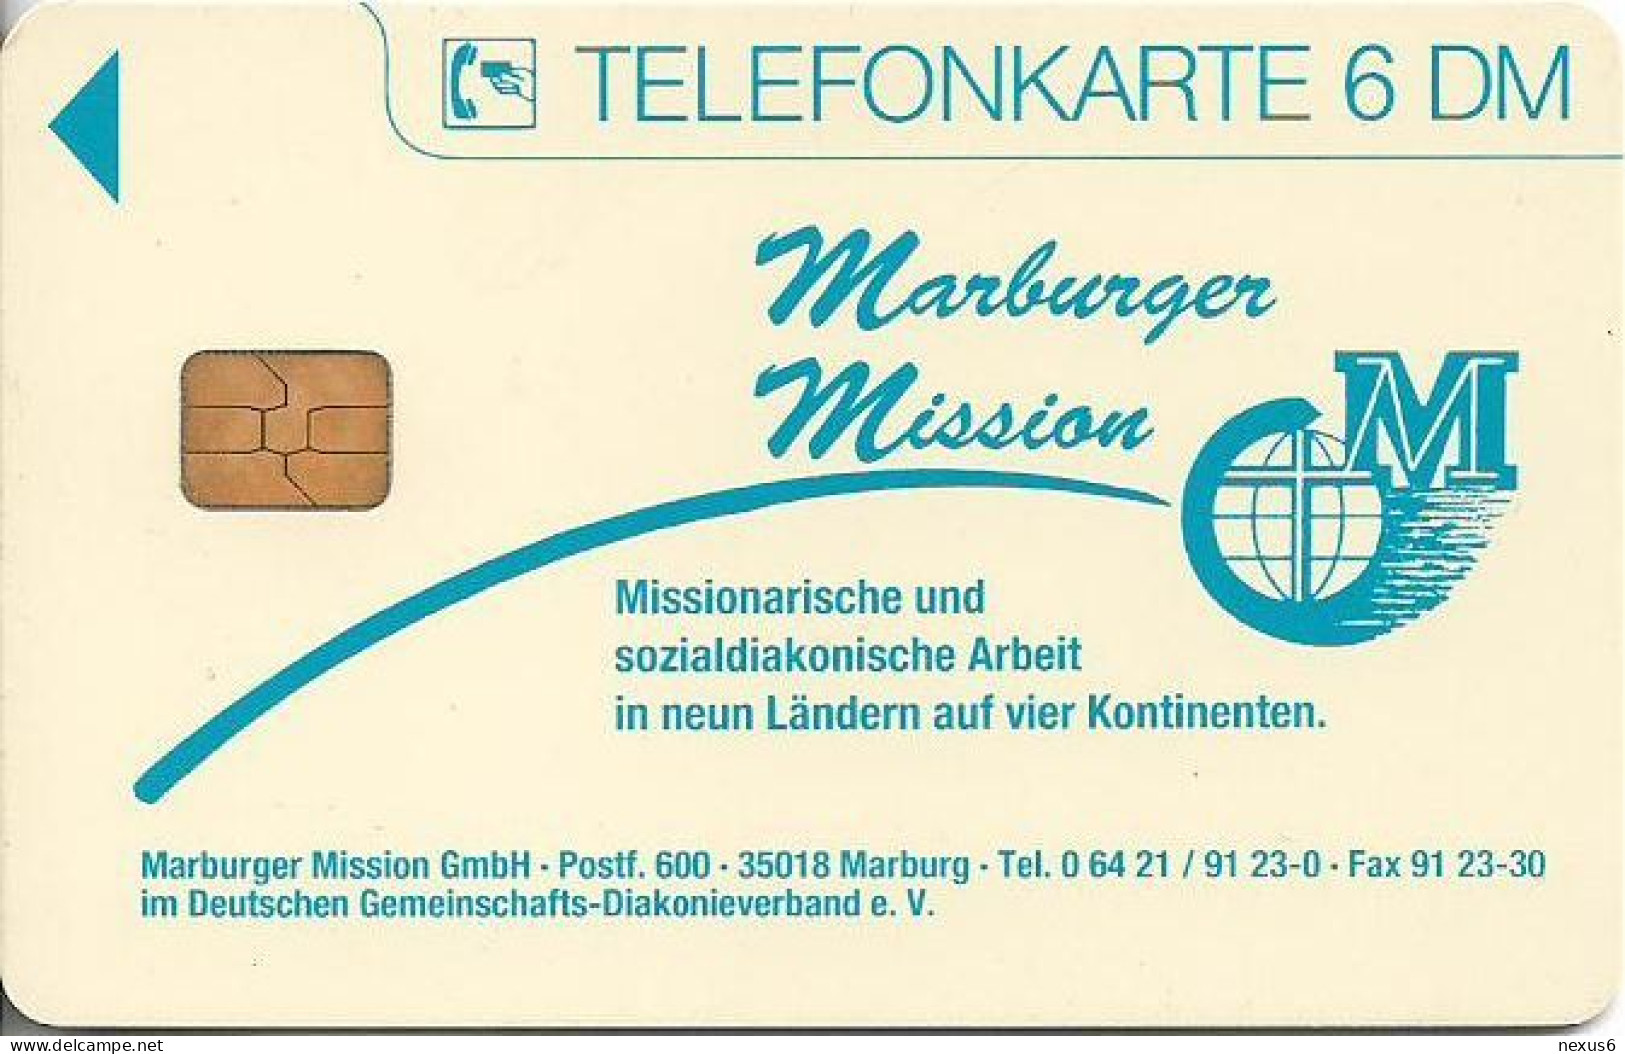 Germany - Marburger Mission - O 0083 - 01.1995, 6DM, 1.000ex, Used - O-Series: Kundenserie Vom Sammlerservice Ausgeschlossen